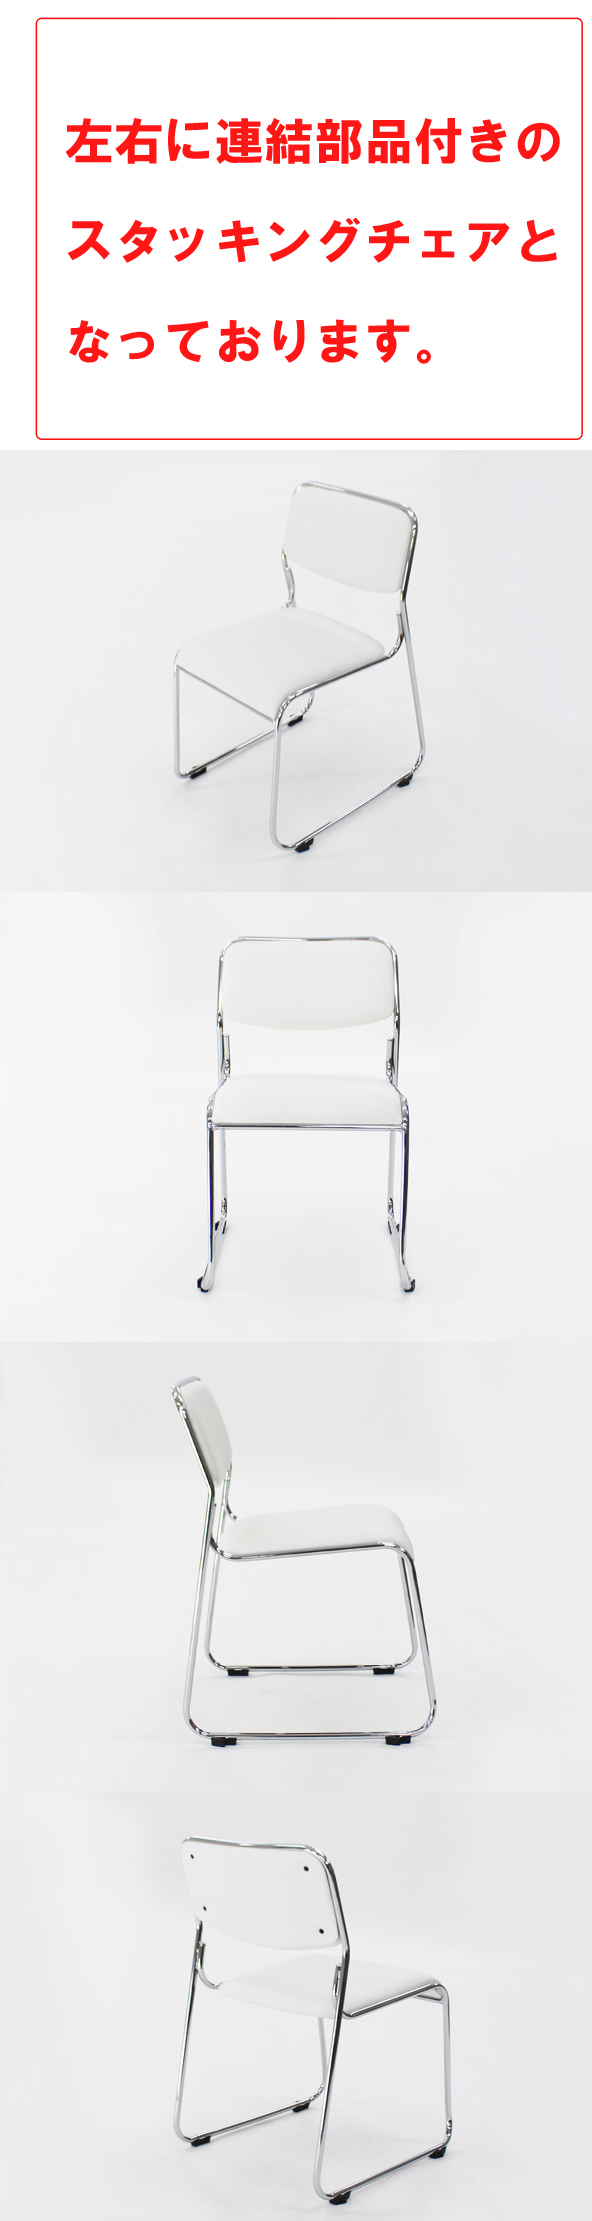 【在庫あ格安】送料無料 連結可能 スタッキングチェア 6脚セット ホワイト ミーティングチェア パイプ椅子 会議イス 会議椅子 パイプチェア 横連結可能 パイプイス